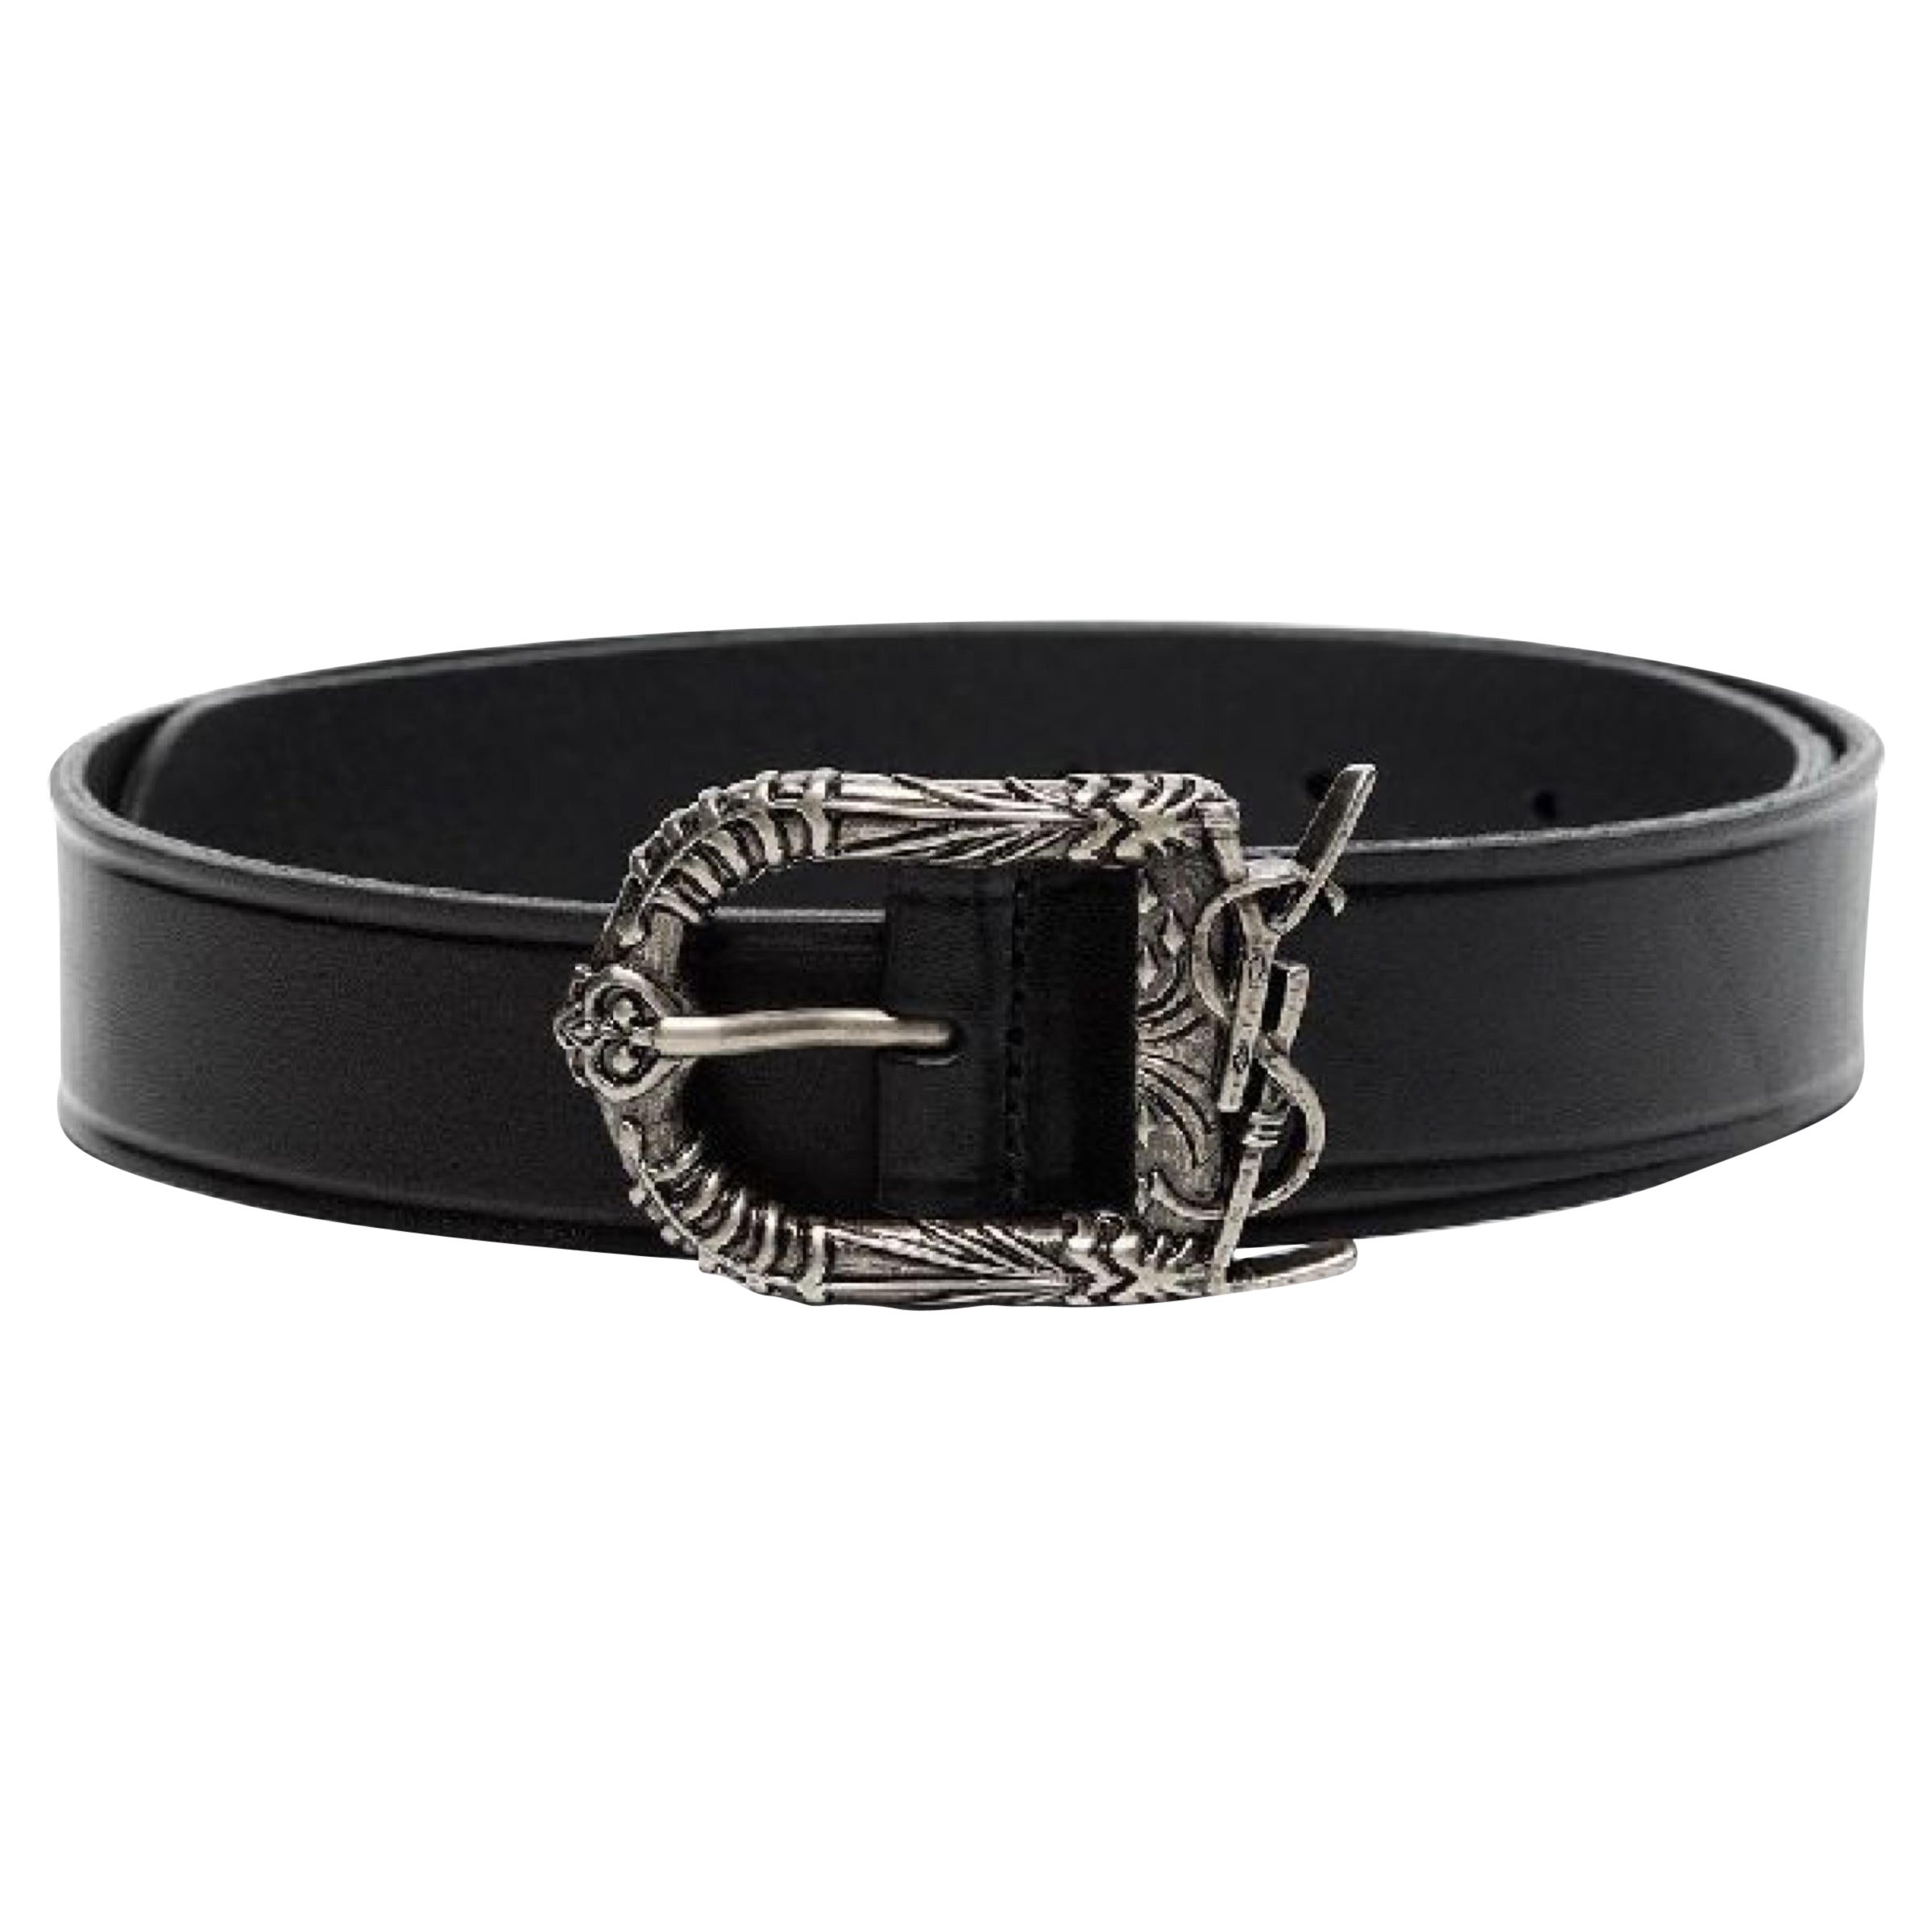 NEW Saint Laurent Black Decorative Buckle Leather Belt Size 36 US 90 EU For Sale